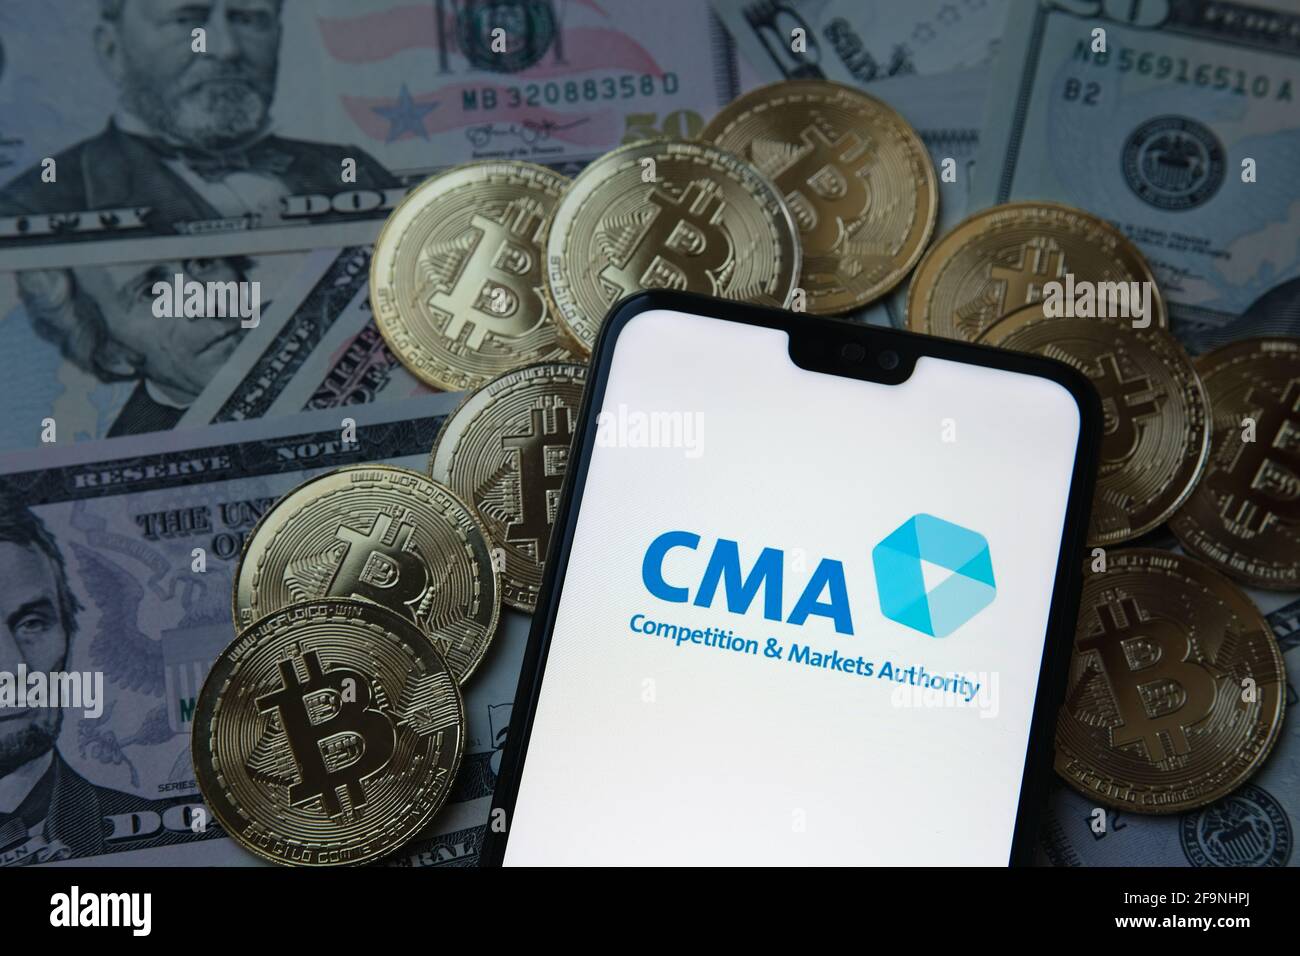 CMA concorrenza e mercati autorità logo, bitcoins, dollari. Foto Stock